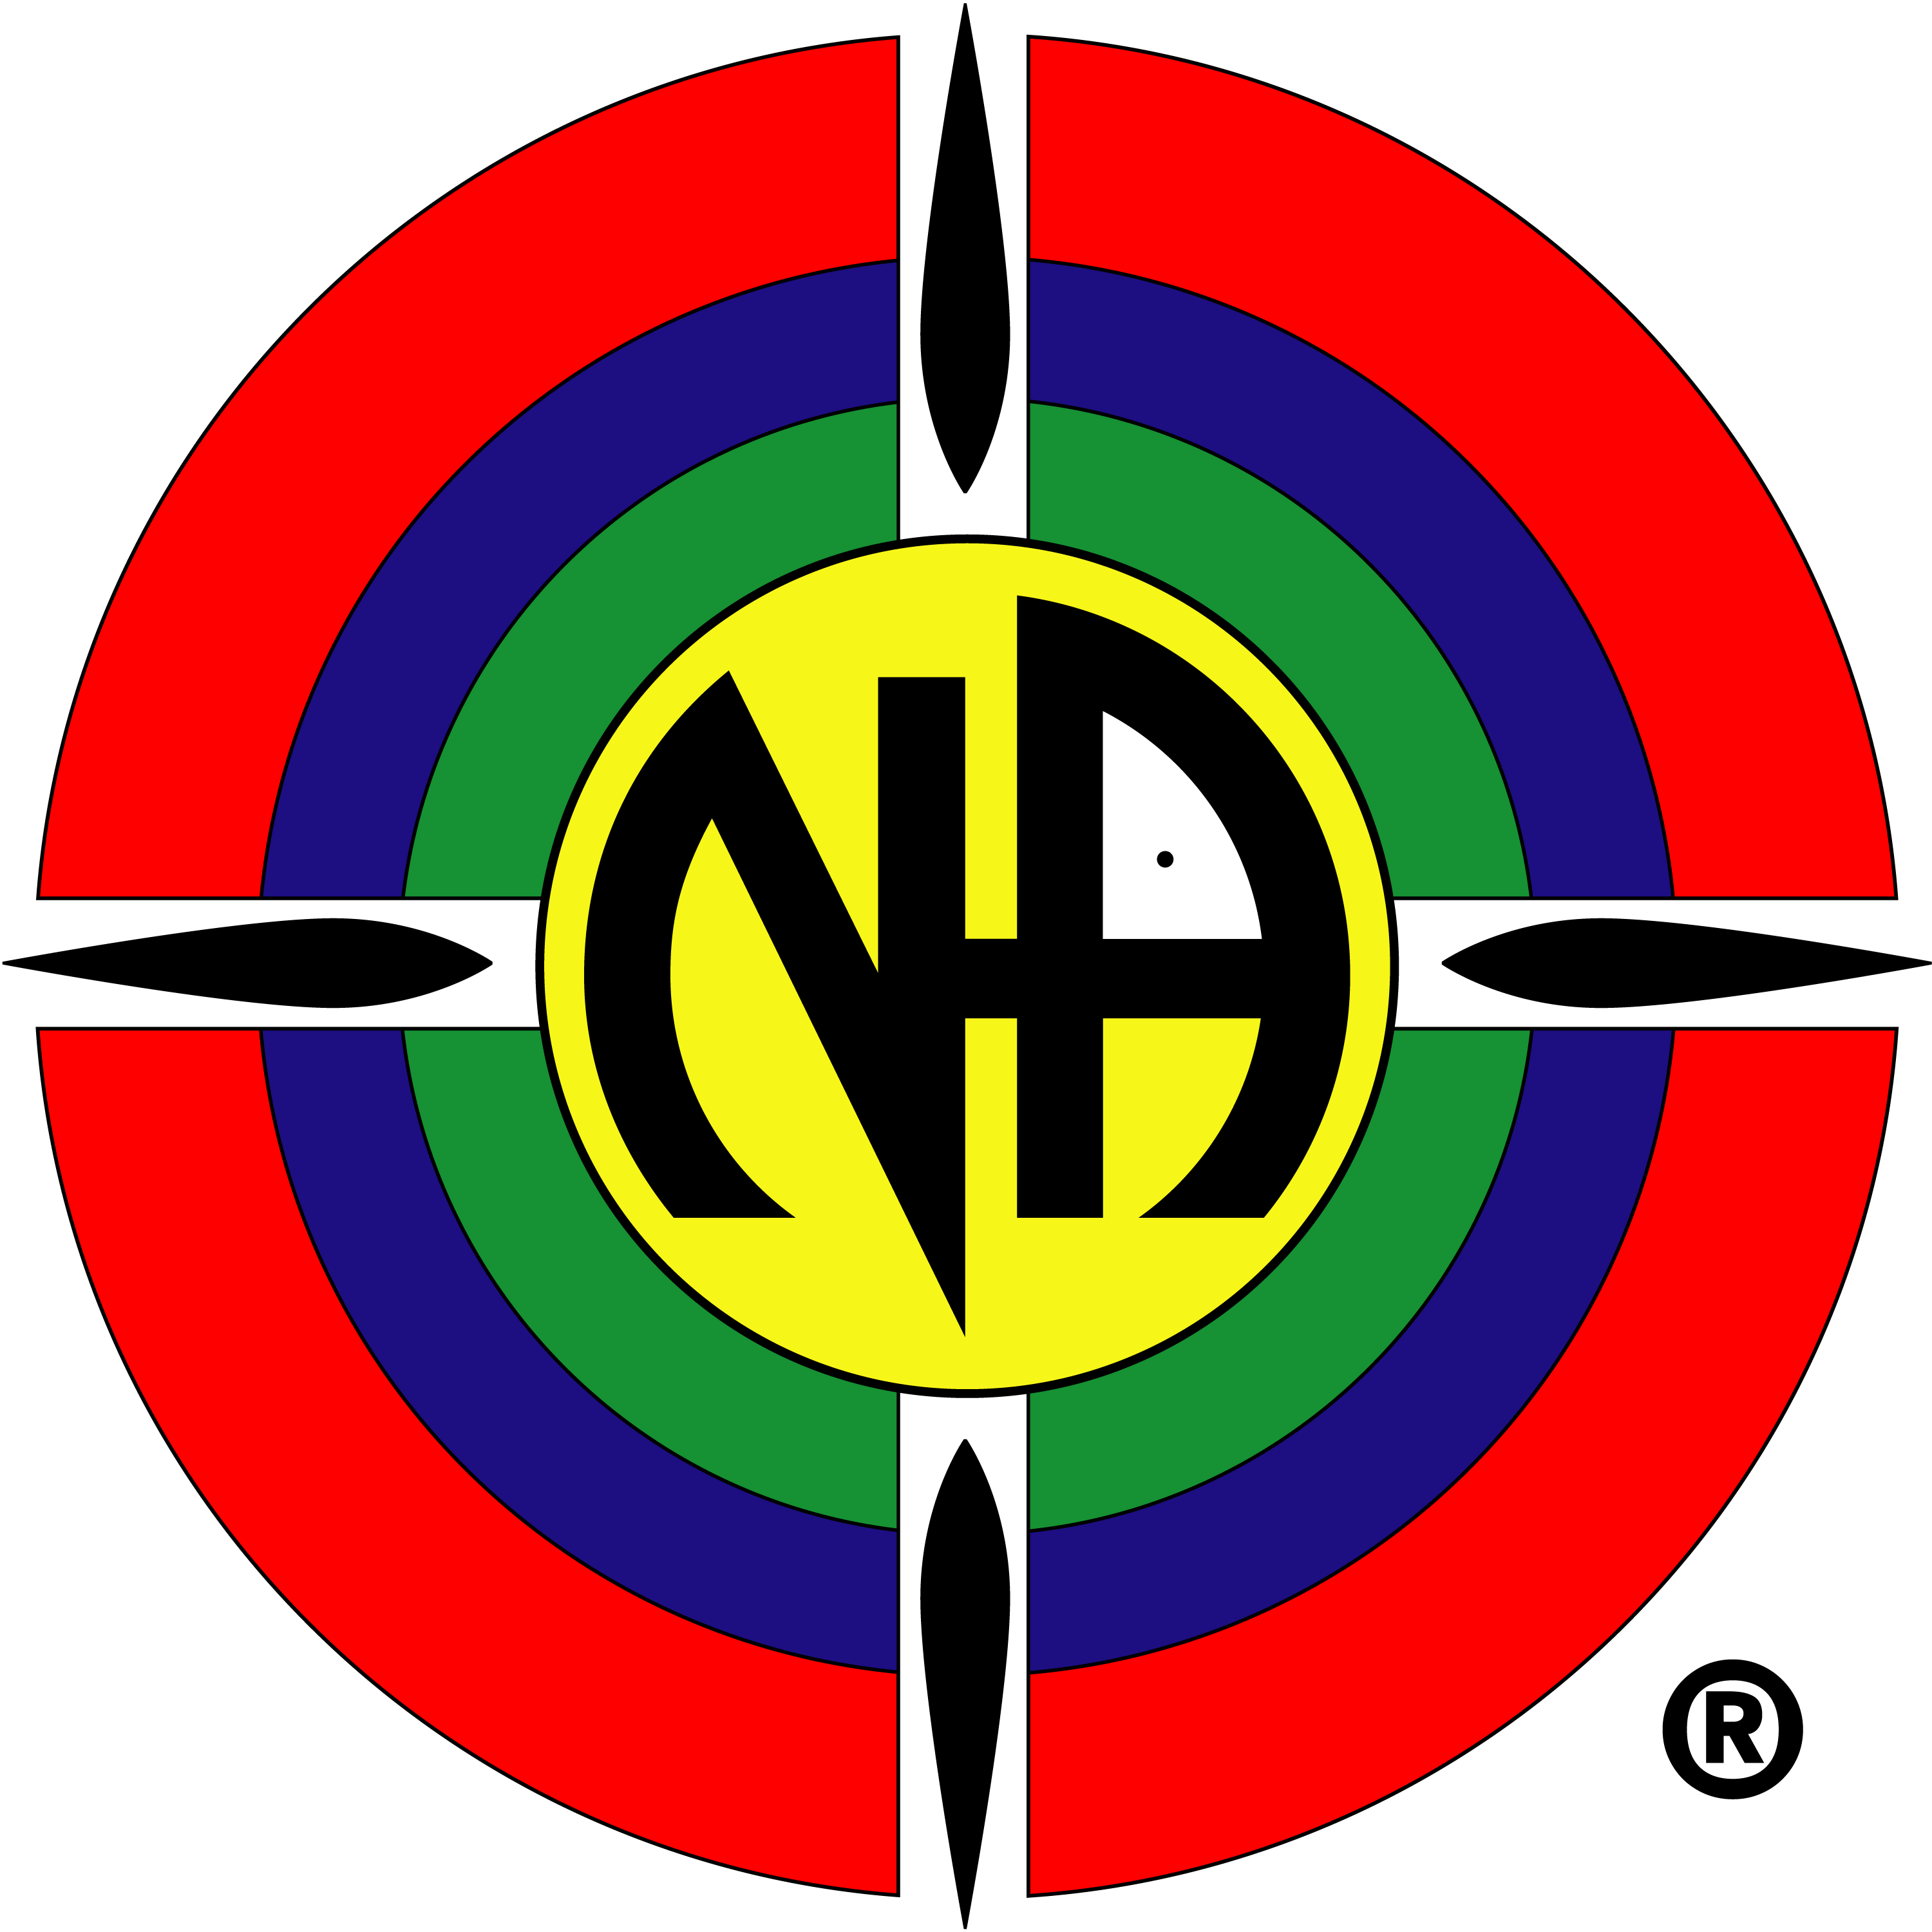 Na De Logo   Logos Rates